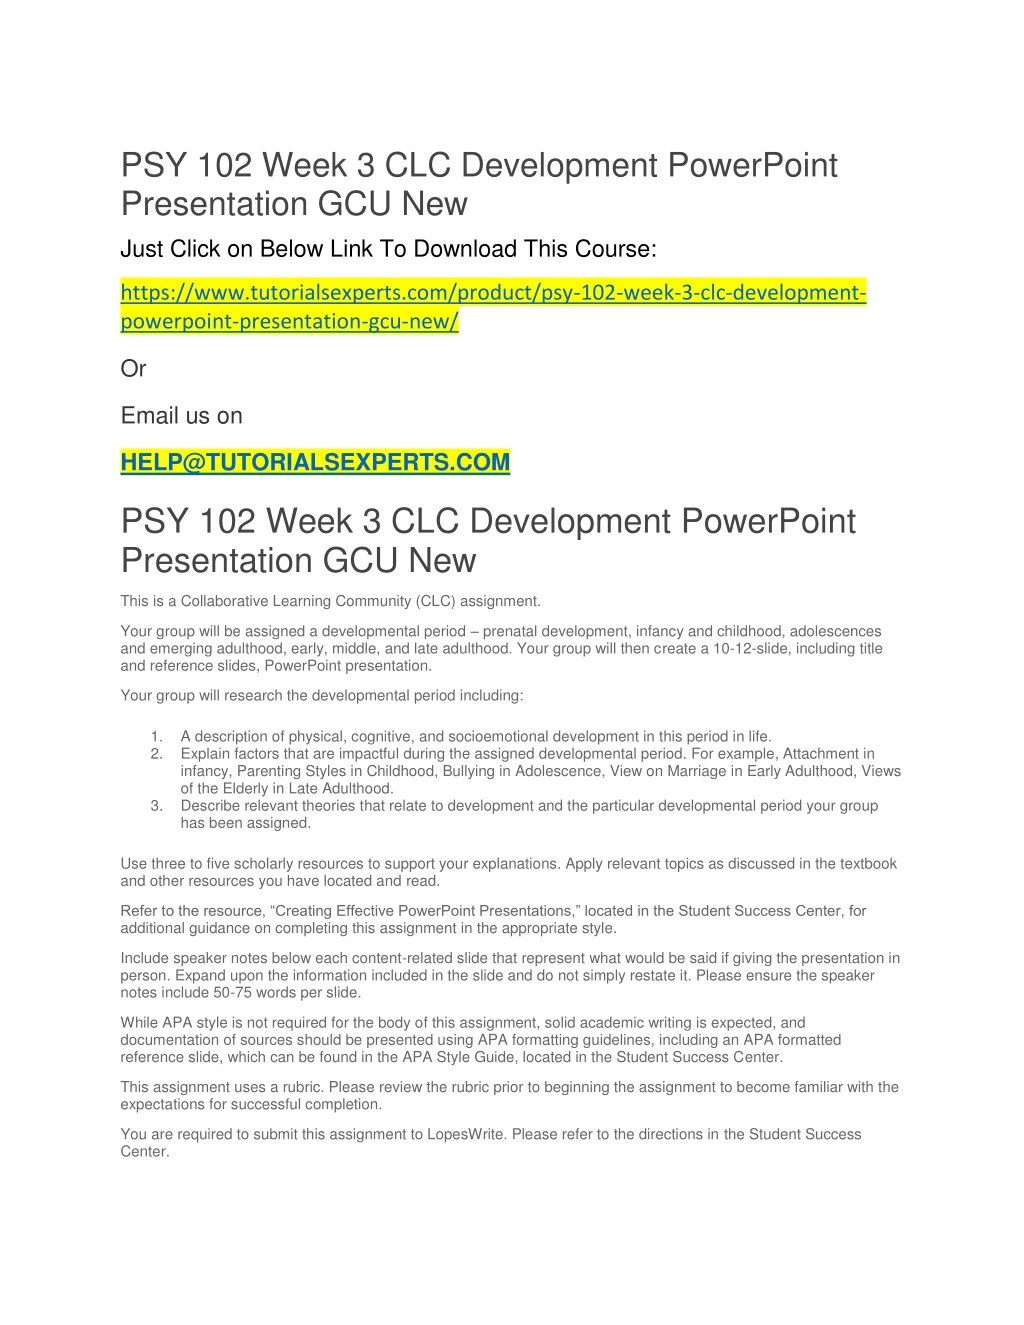 psy 102 week 3 clc development powerpoint